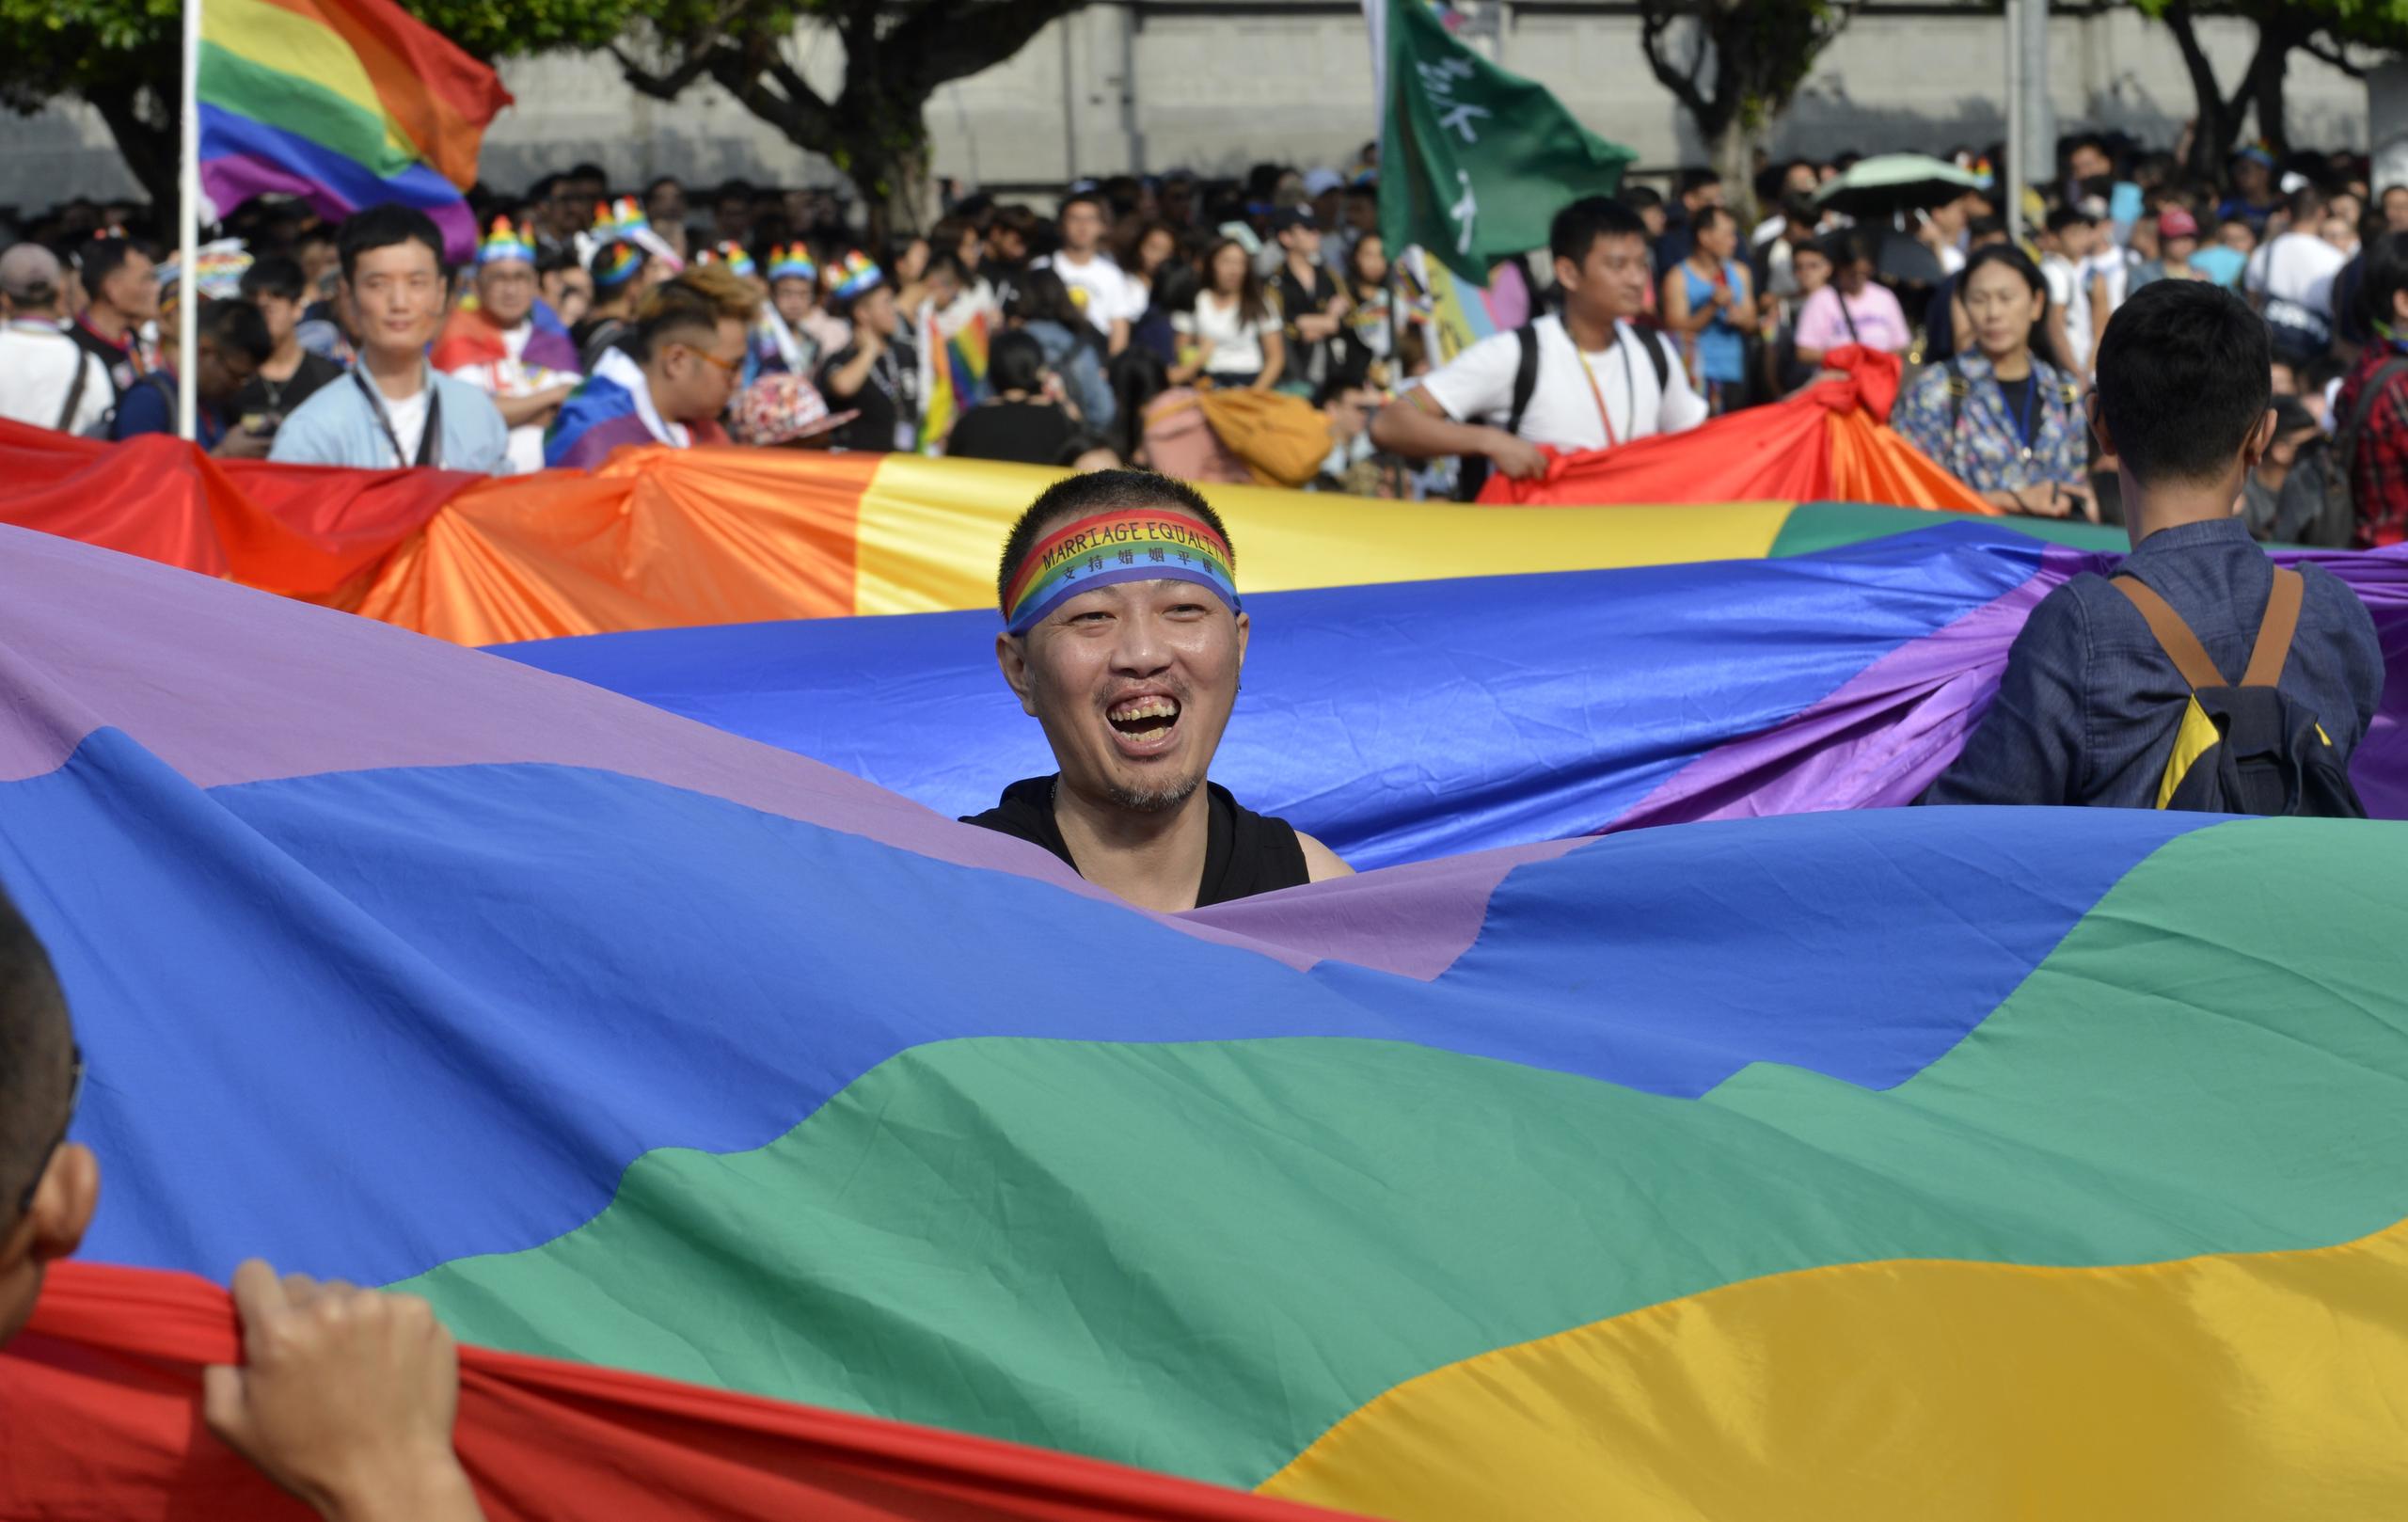 أحد النشطاء في تايوان يحمل علم قوس قزح أثناء تظاهرة للمثليين في تايوان